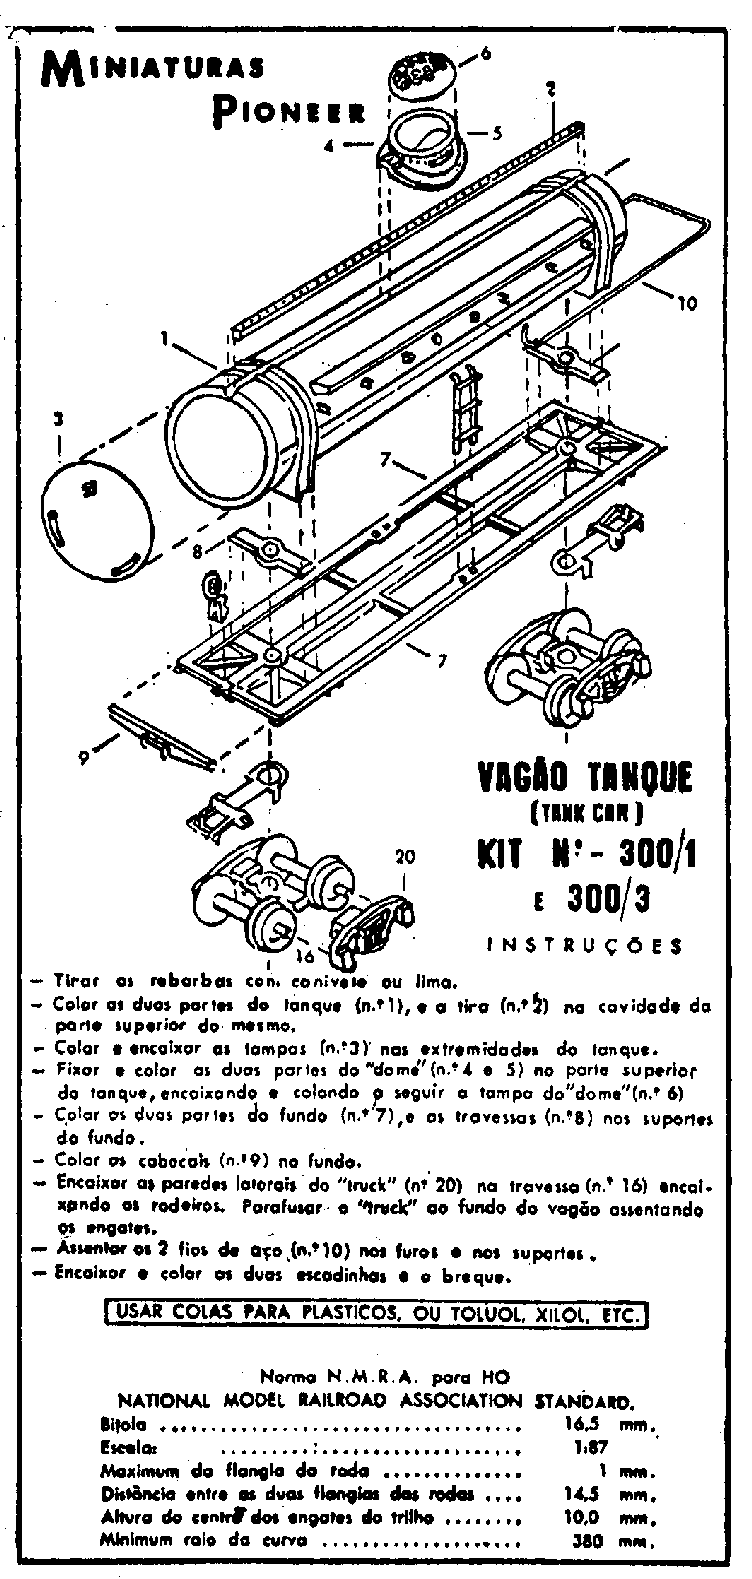 Folha de instruções para montagem do vagão tanque da Miniaturas Pioneer  - Ferreomodelismo